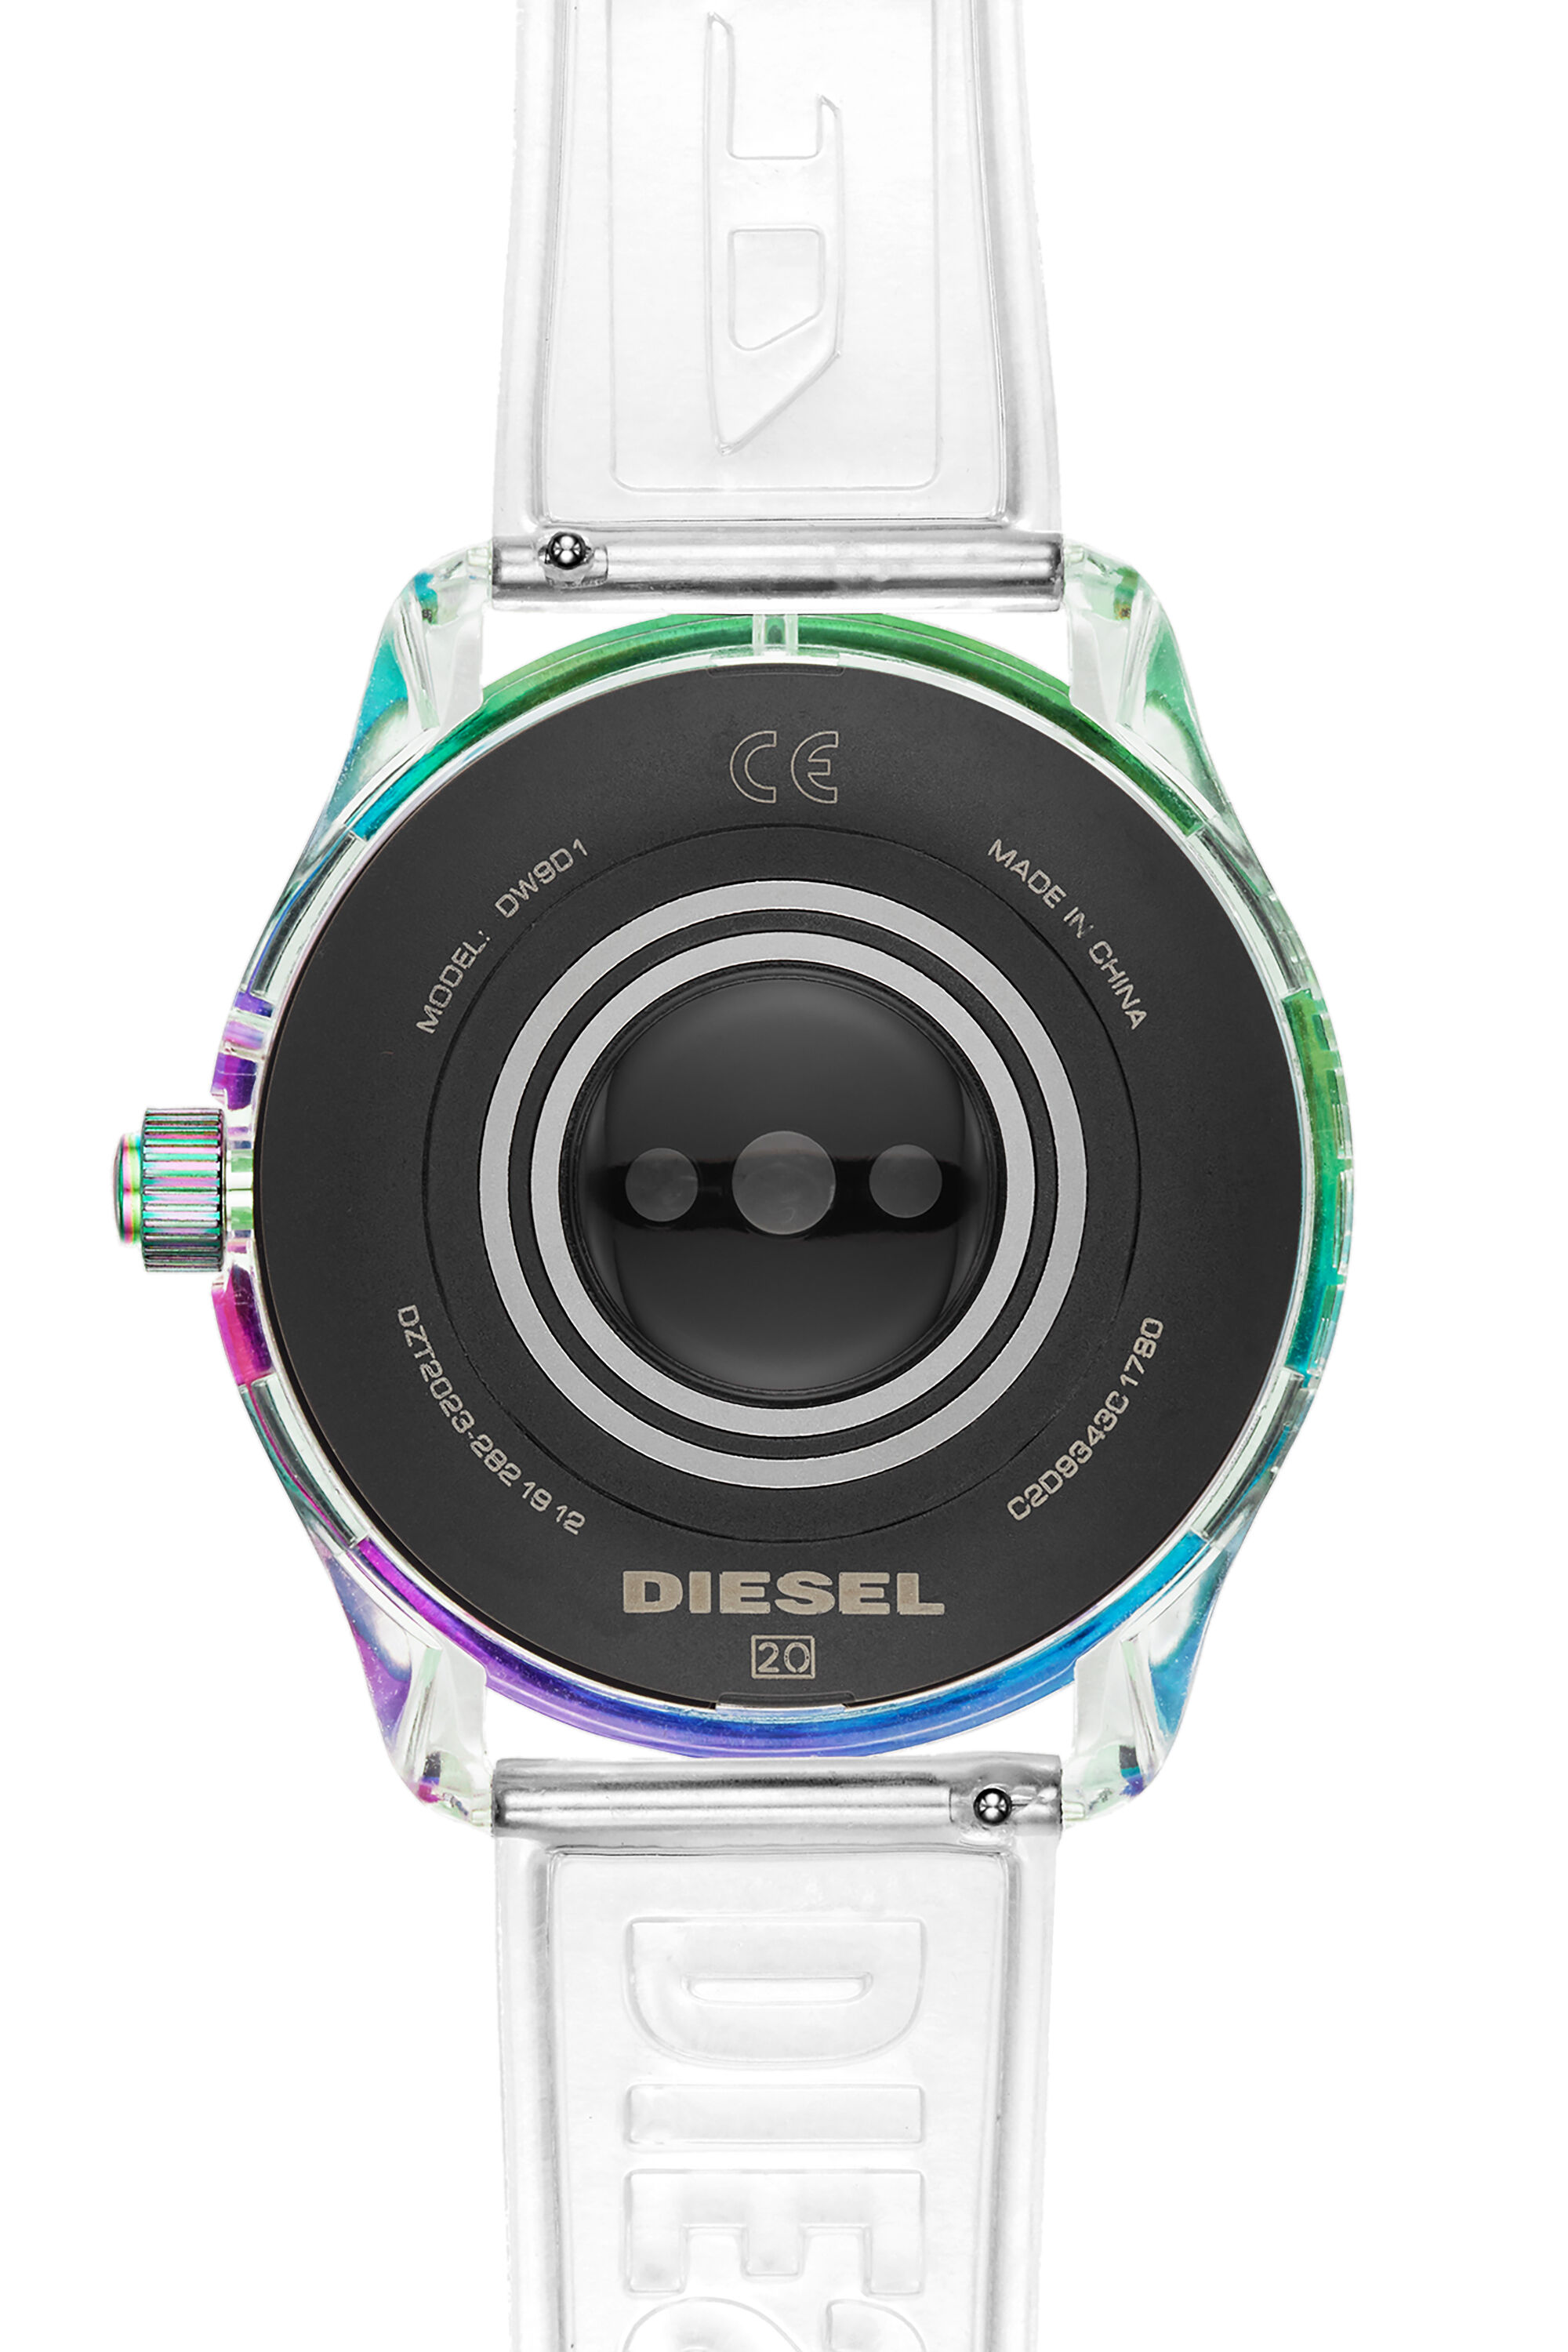 Diesel - DT2023, Blanco - Image 3